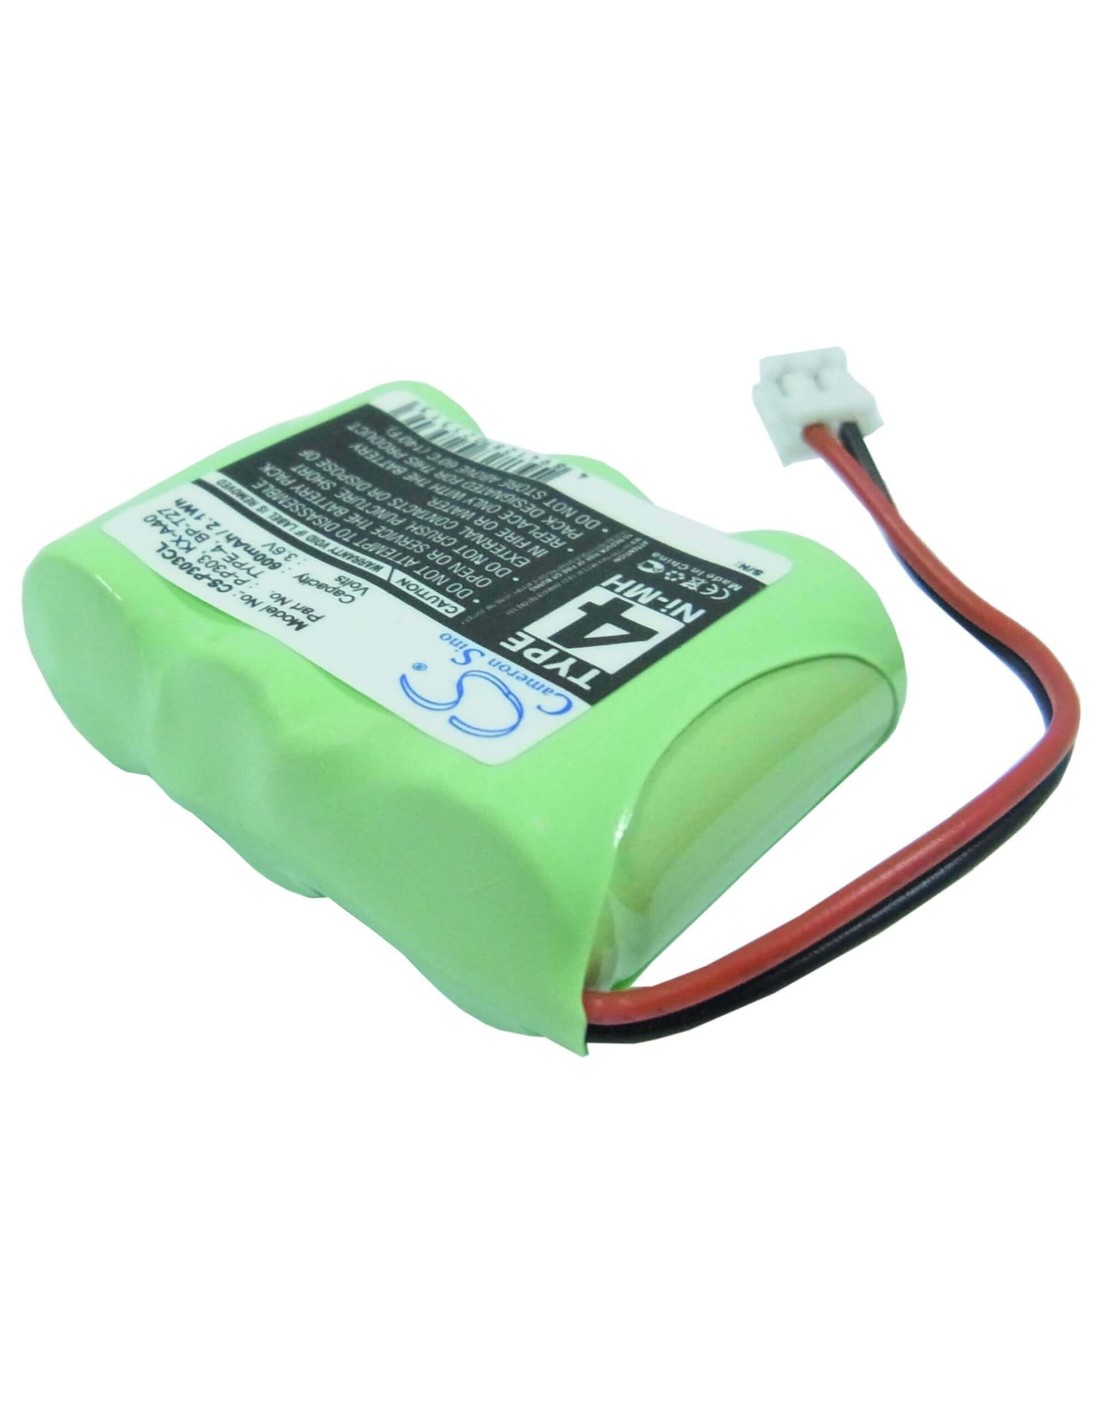 Battery for Pactel, 2282504, Cs8000, Cs8001, Cs8200, 3.6V, 600mAh - 2.16Wh